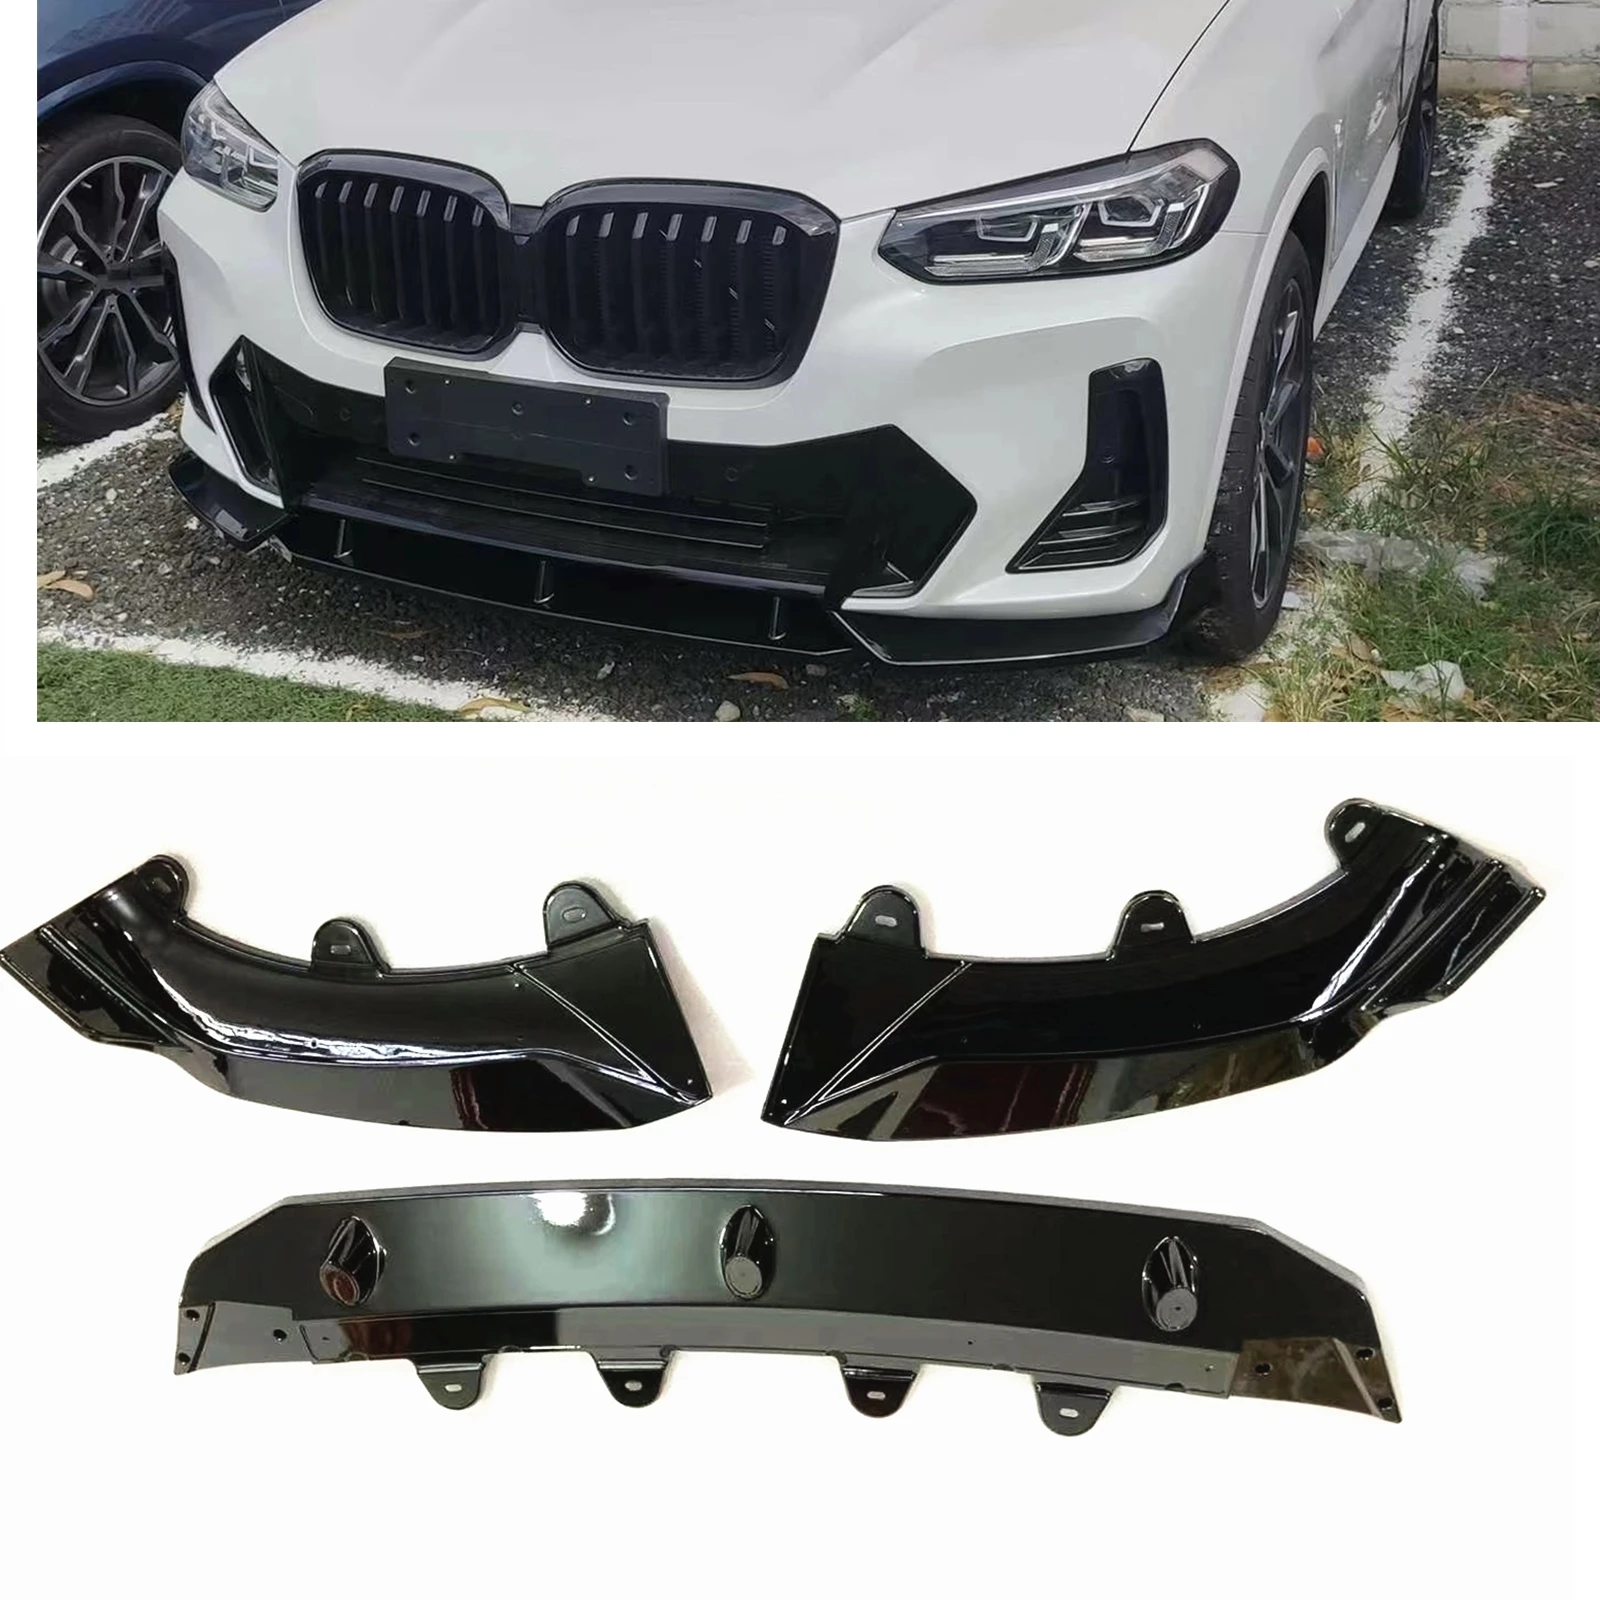 

Передний бампер, спойлер, губа для BMW X3 G01 2021,7-2022 IX3 X4 G02, глянцевый черный/углеродное волокно, защитная пластина, защитный сплиттер, комплект